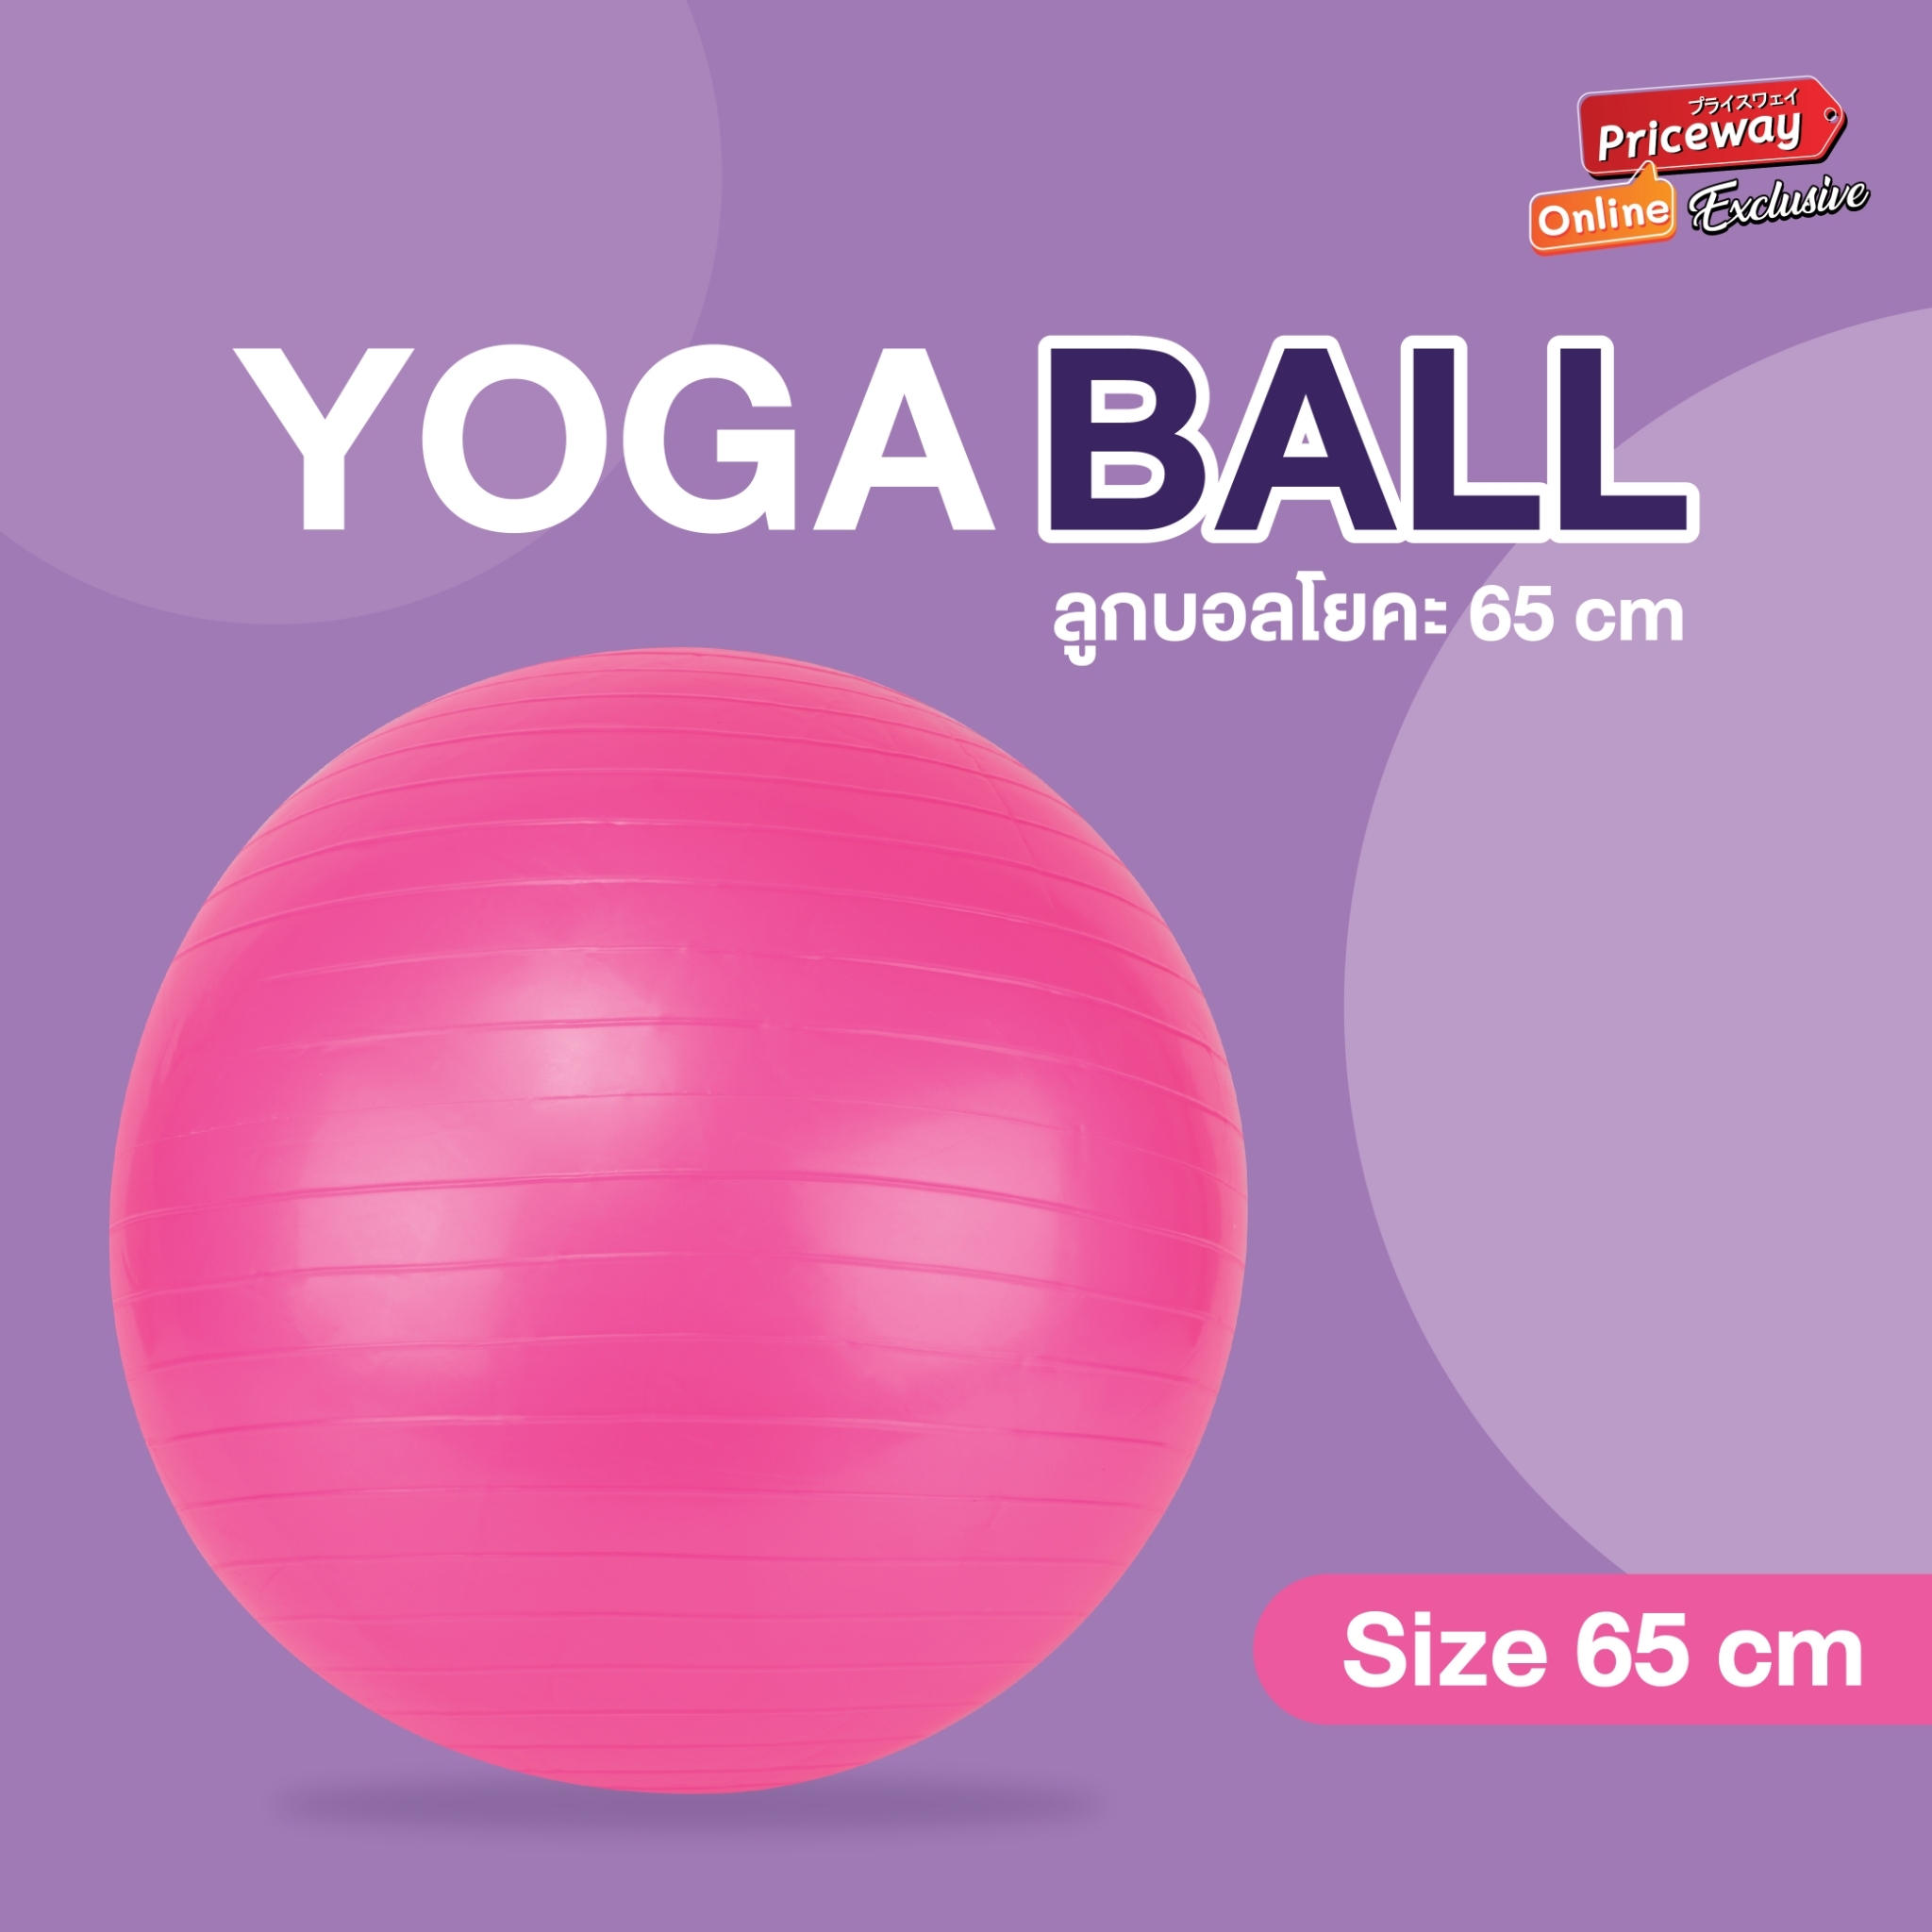 YOGA BALL บอลโยคะ ลูกบอลออกกำลังกาย 65 cm. พร้อมที่ปั๊มลม รุ่น YGB001